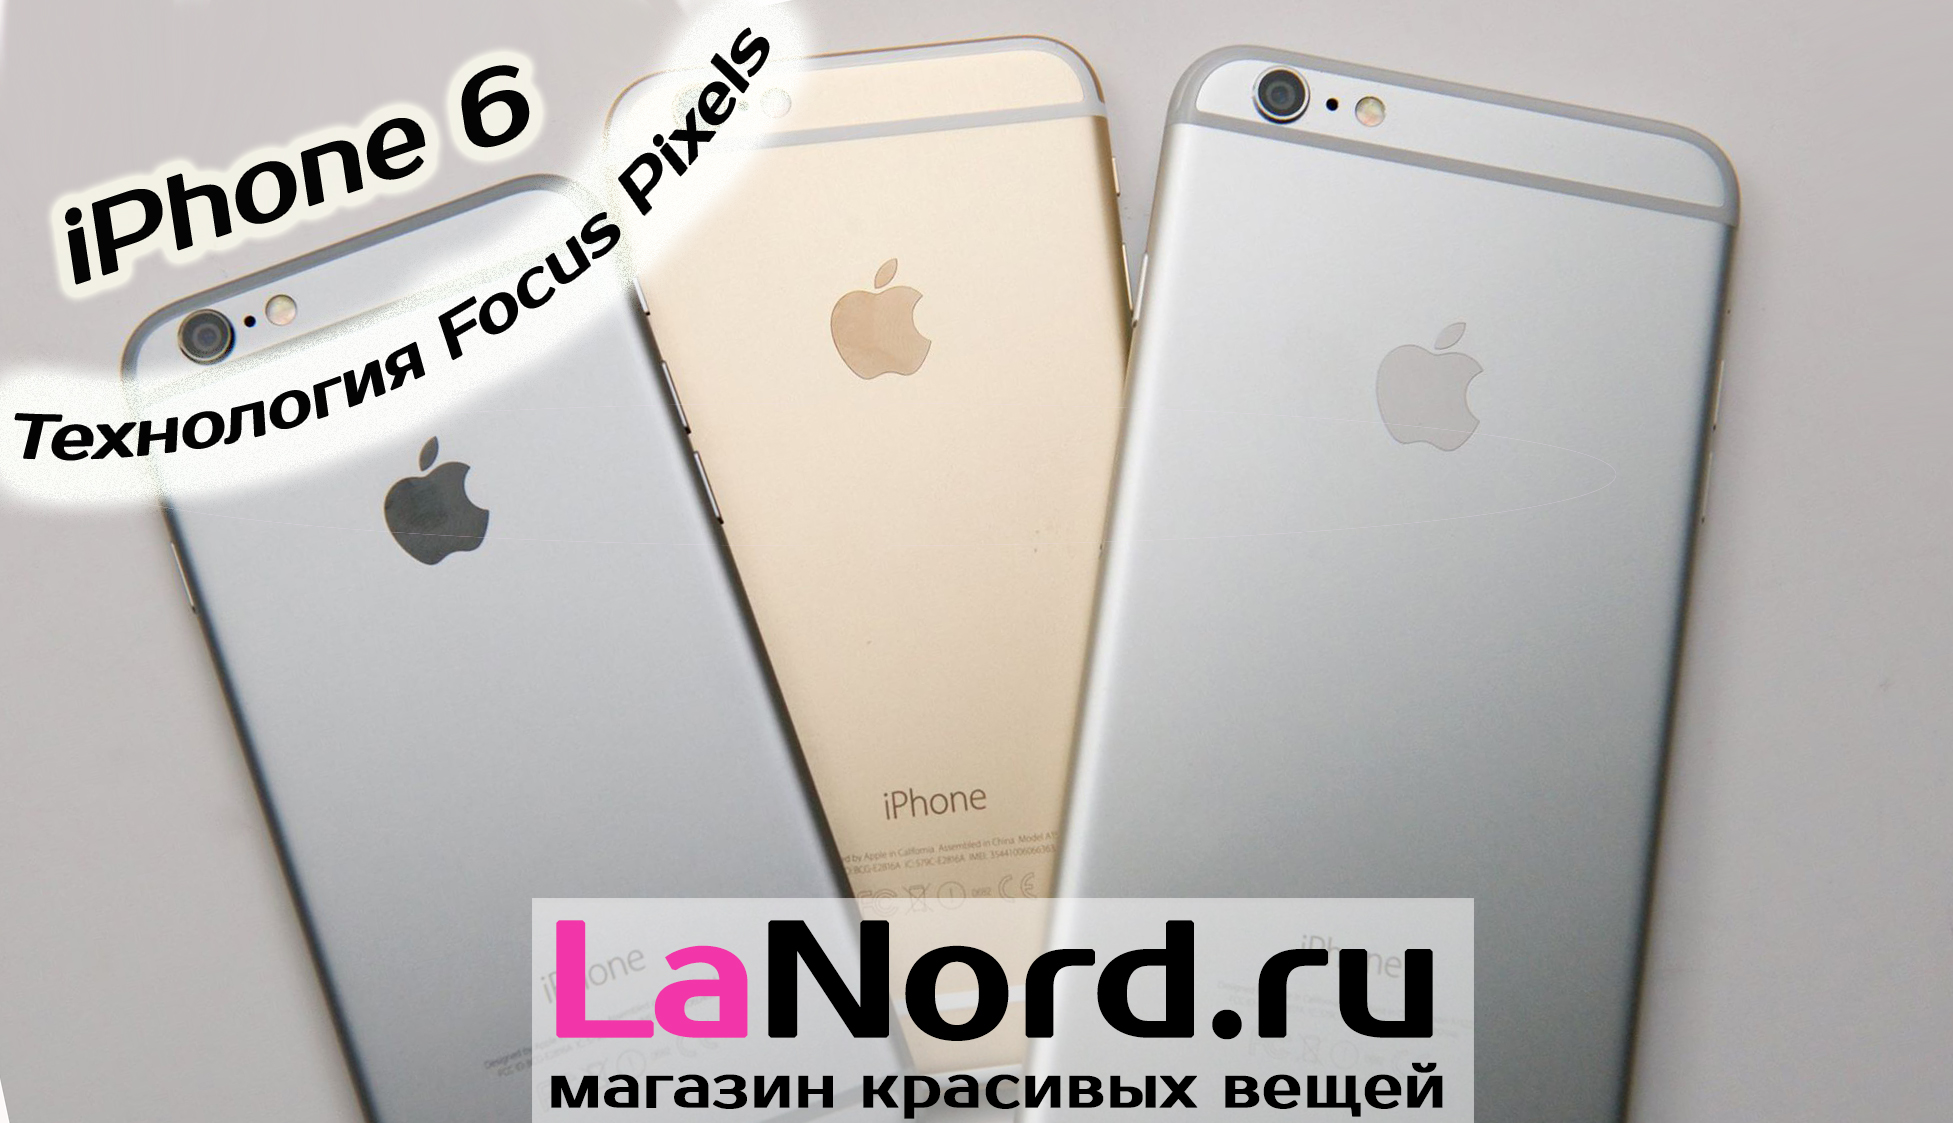 Apple iPhone 6 128GB Gray (серый) восстановленный